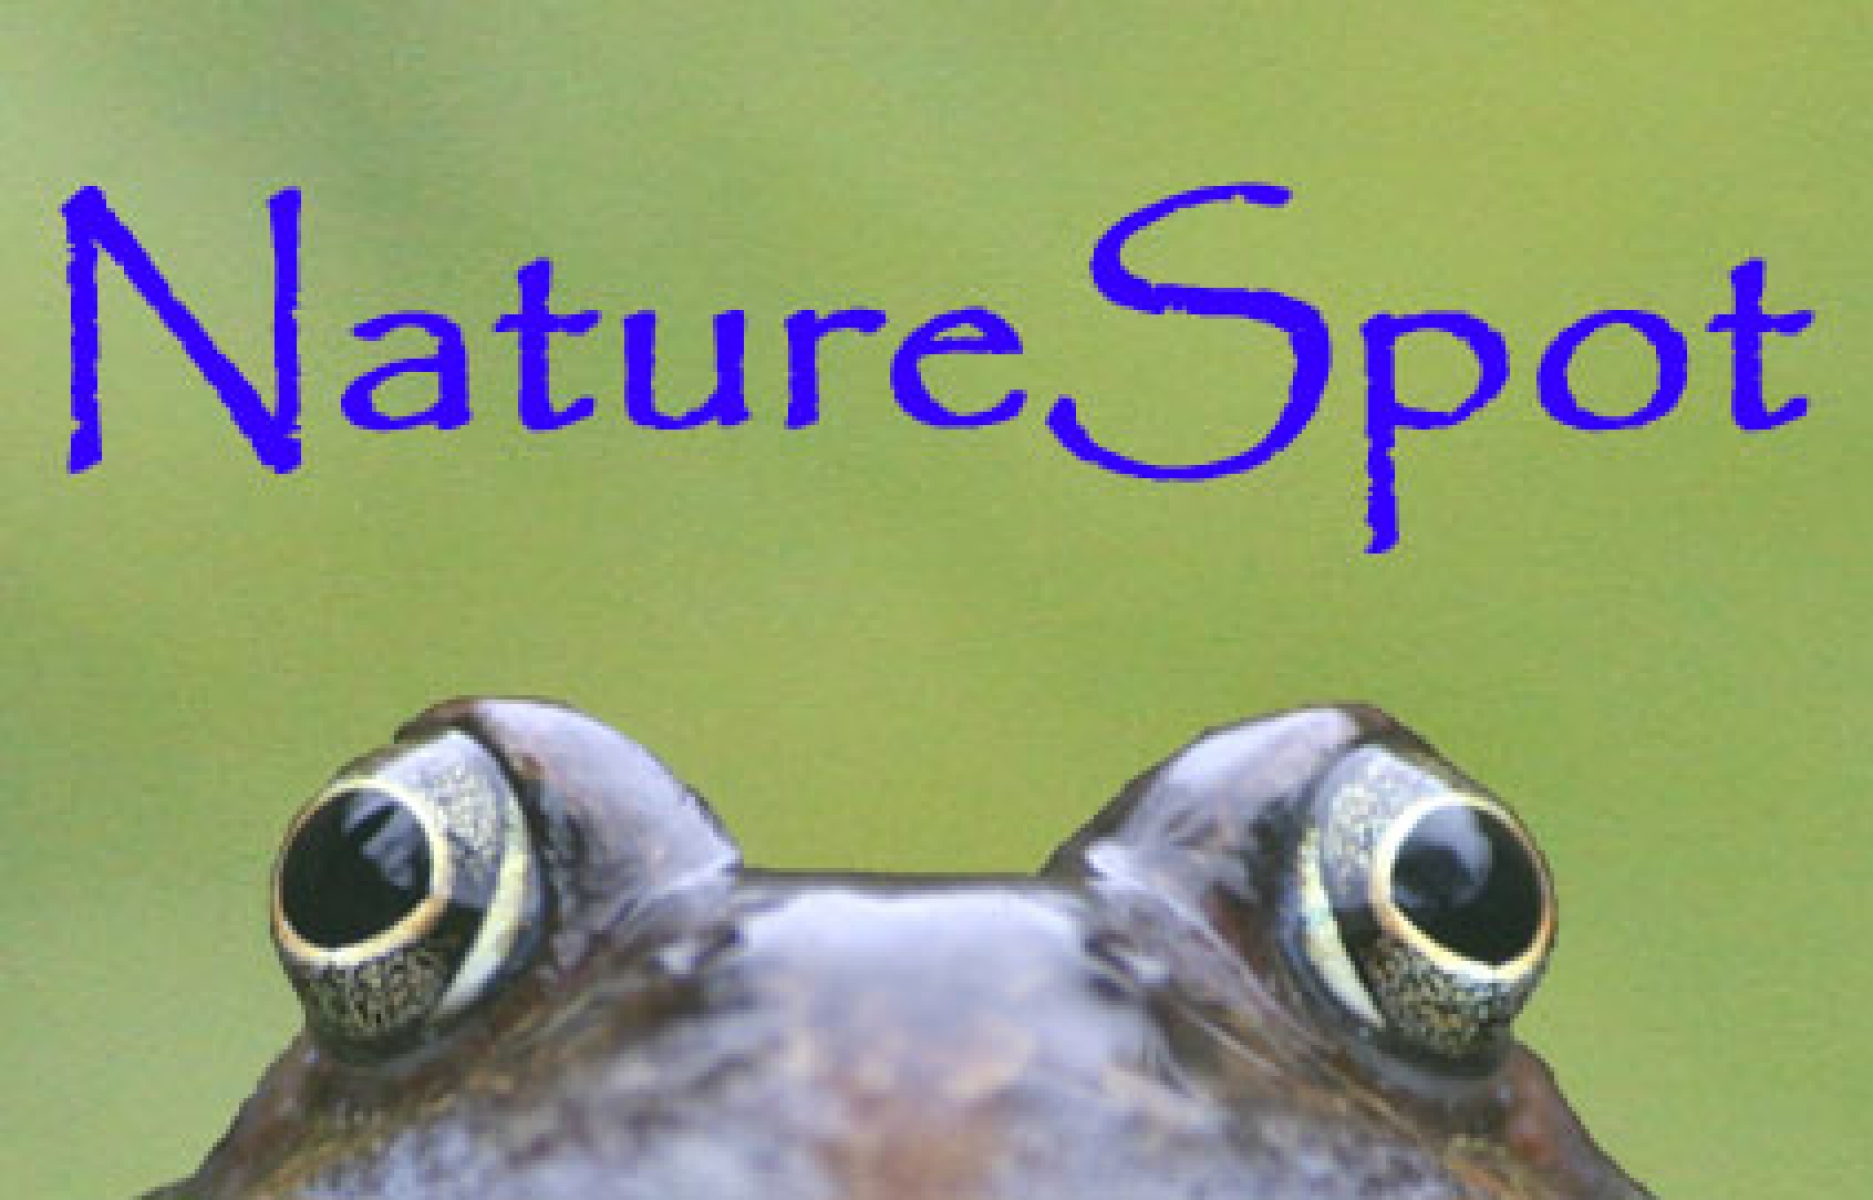 NatureSpot eCards